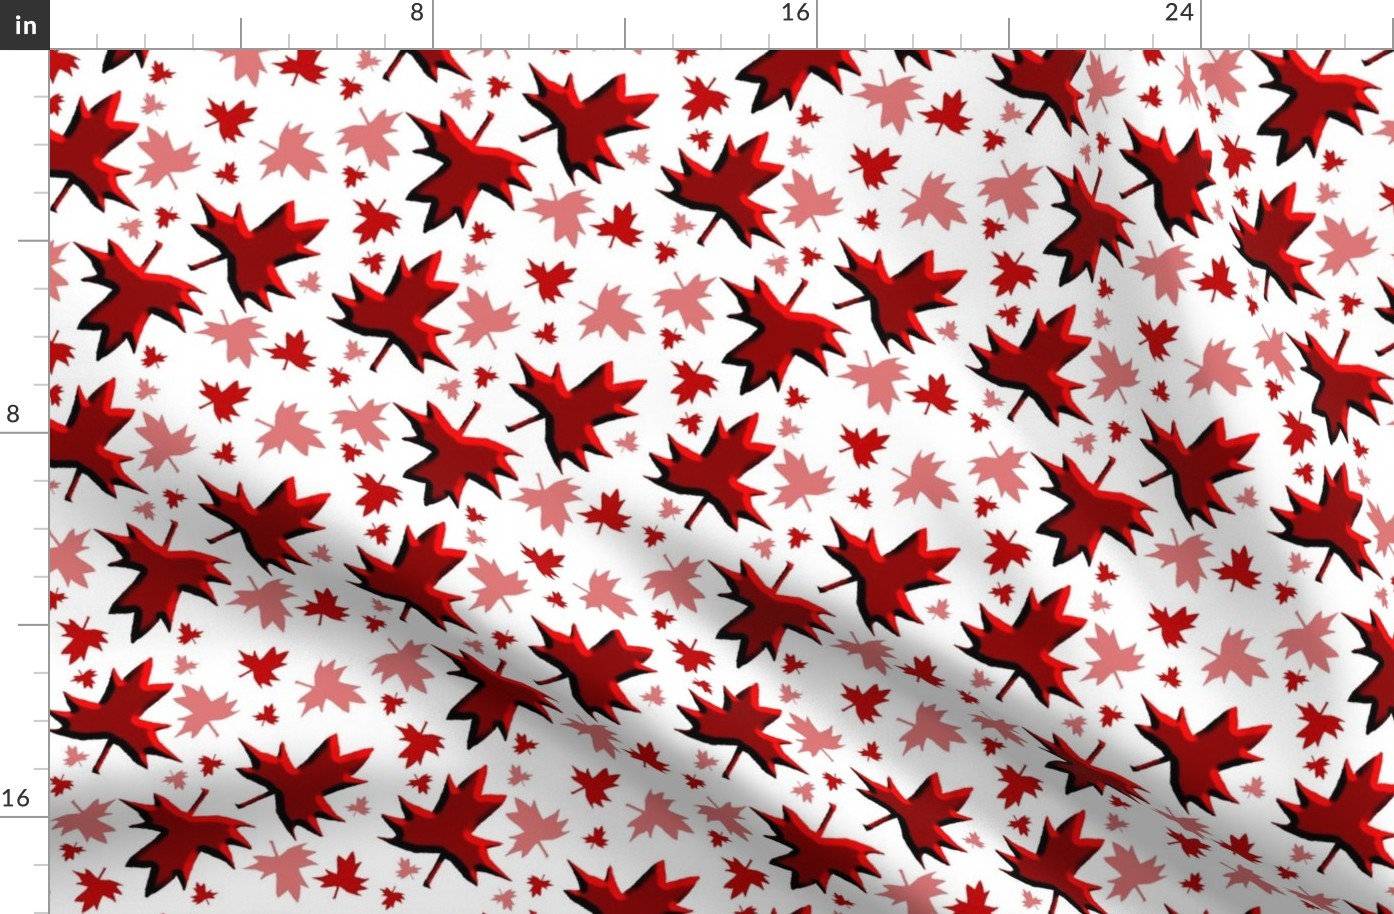 Maple Leaf Multi 3D on White